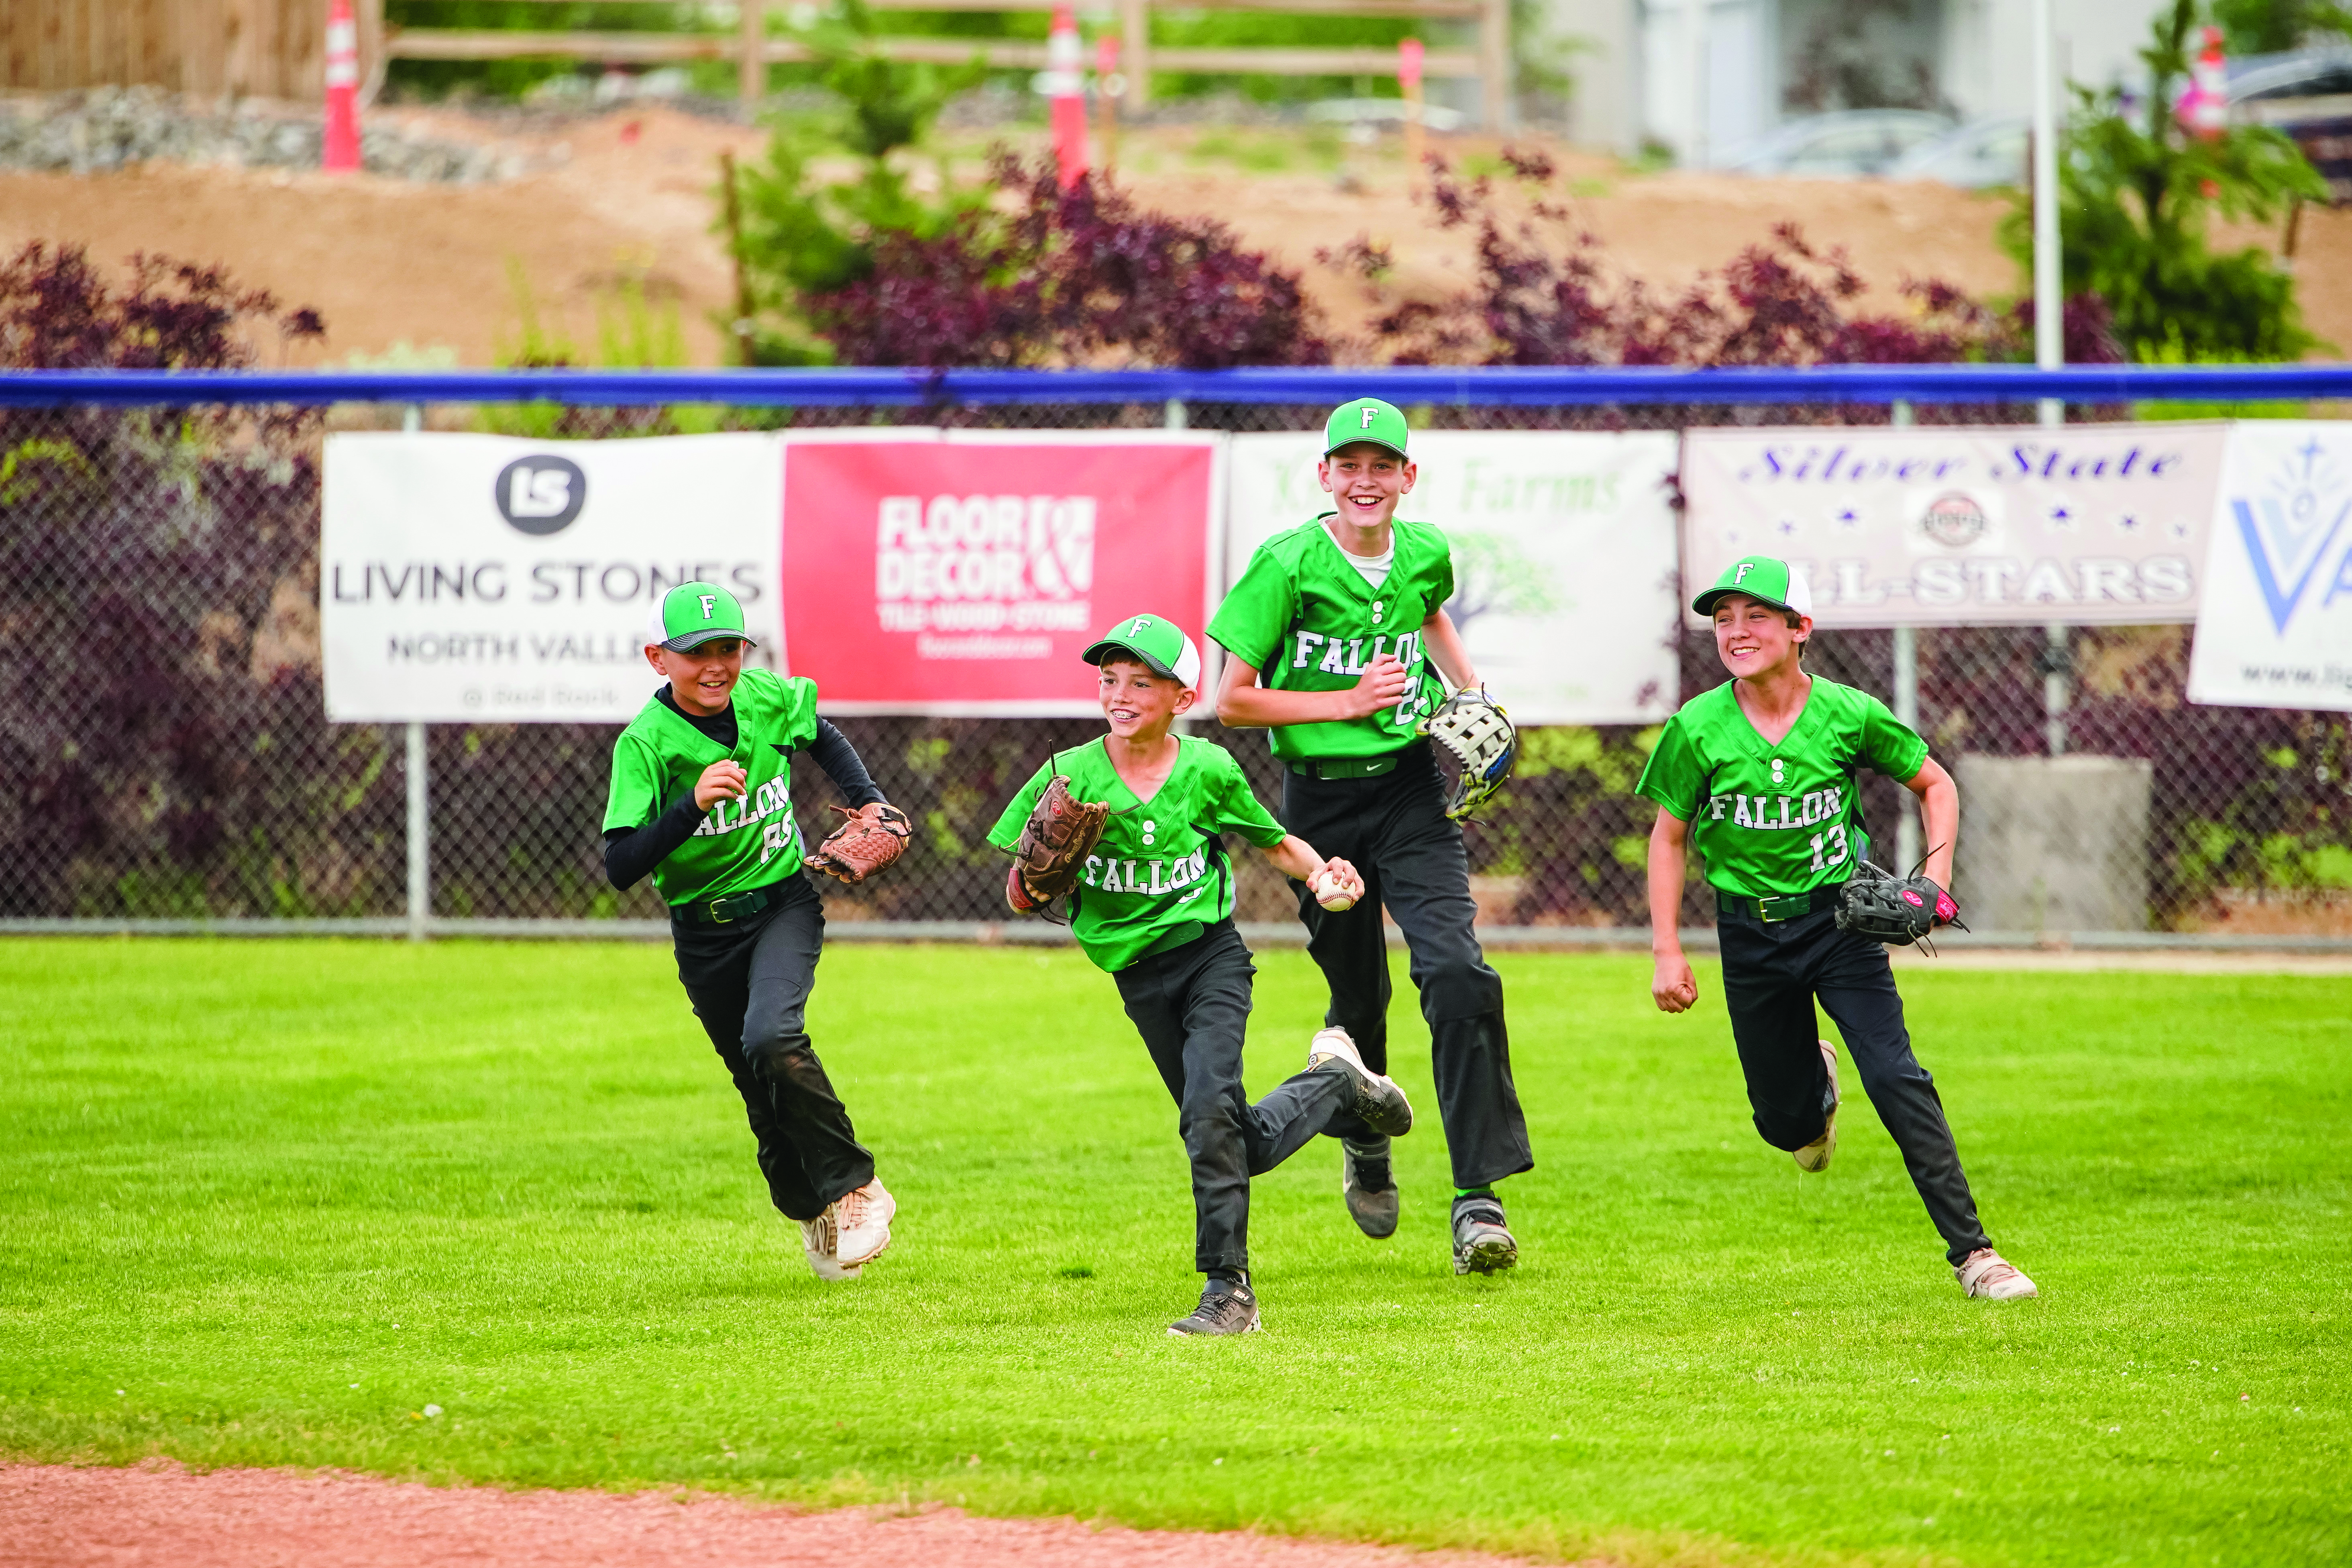 Regional all-star baseball returns to Fallon